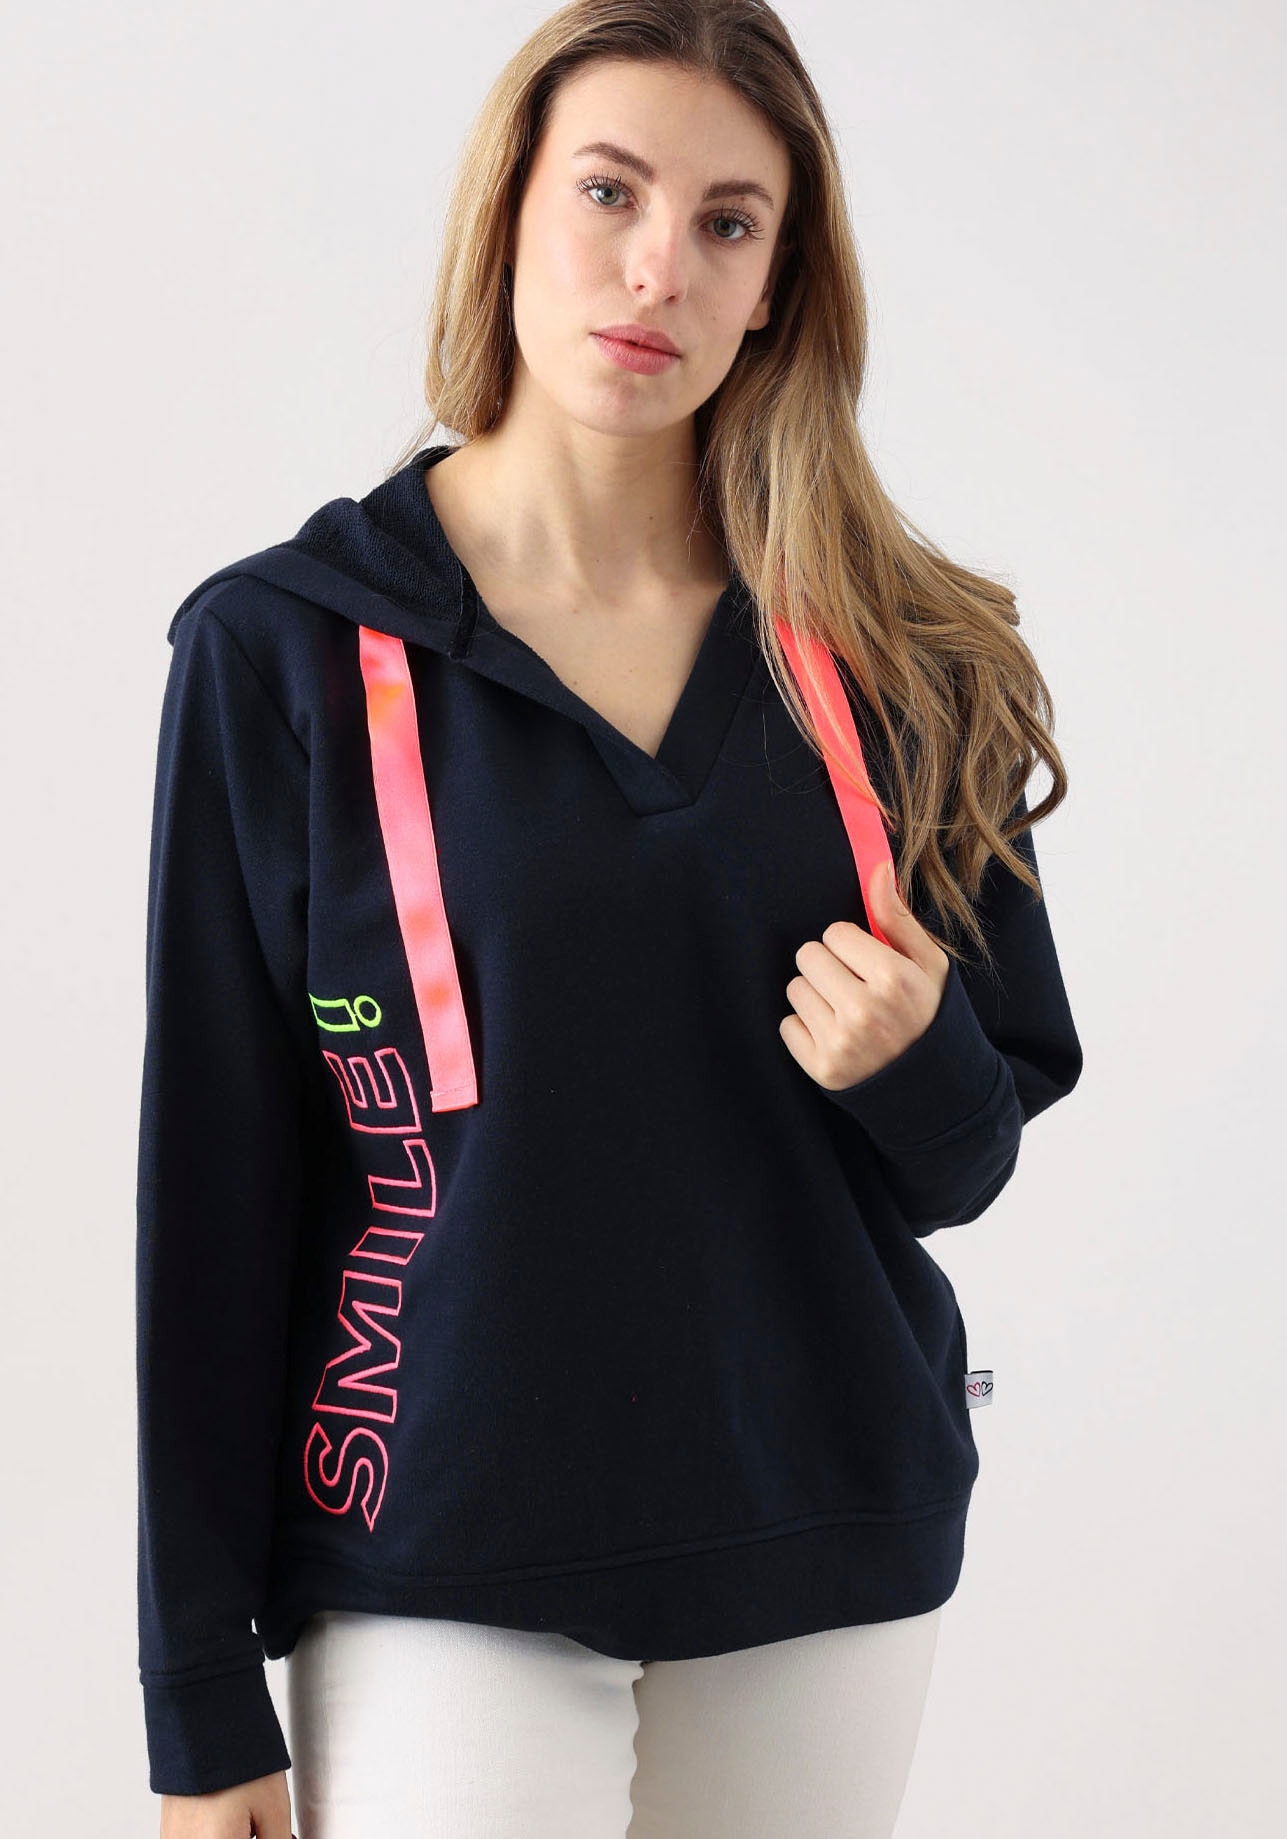 Sweatshirt »Smile«, mit V-Ausschnitt, Frontprint durch das Wort Smile, neonfarben